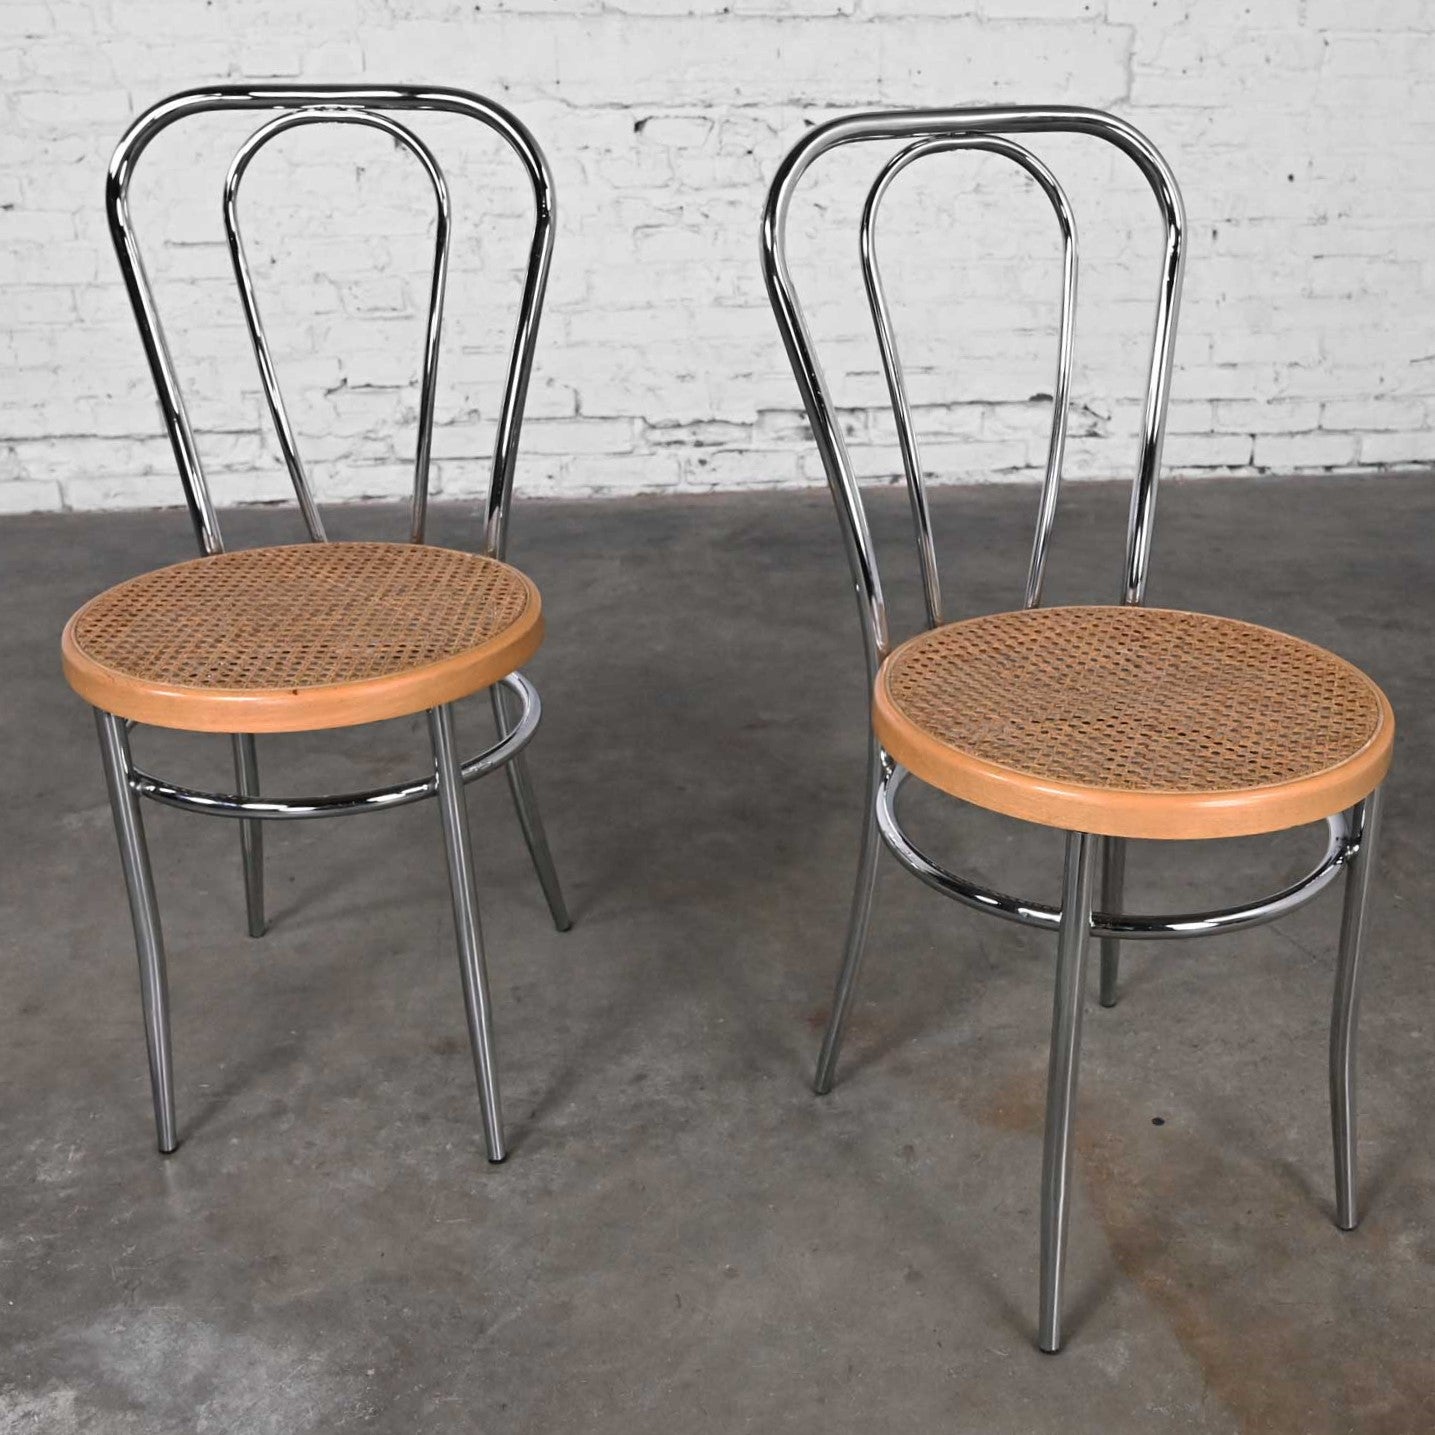 Jolie paire de chaises de bistro ou de café vintage de style Bauhaus fabriquées en Italie d'après Thonet, avec structure chromée et assise en bois et en rotin. Très bon état, tout en gardant à l'esprit qu'il s'agit d'un produit vintage et non pas